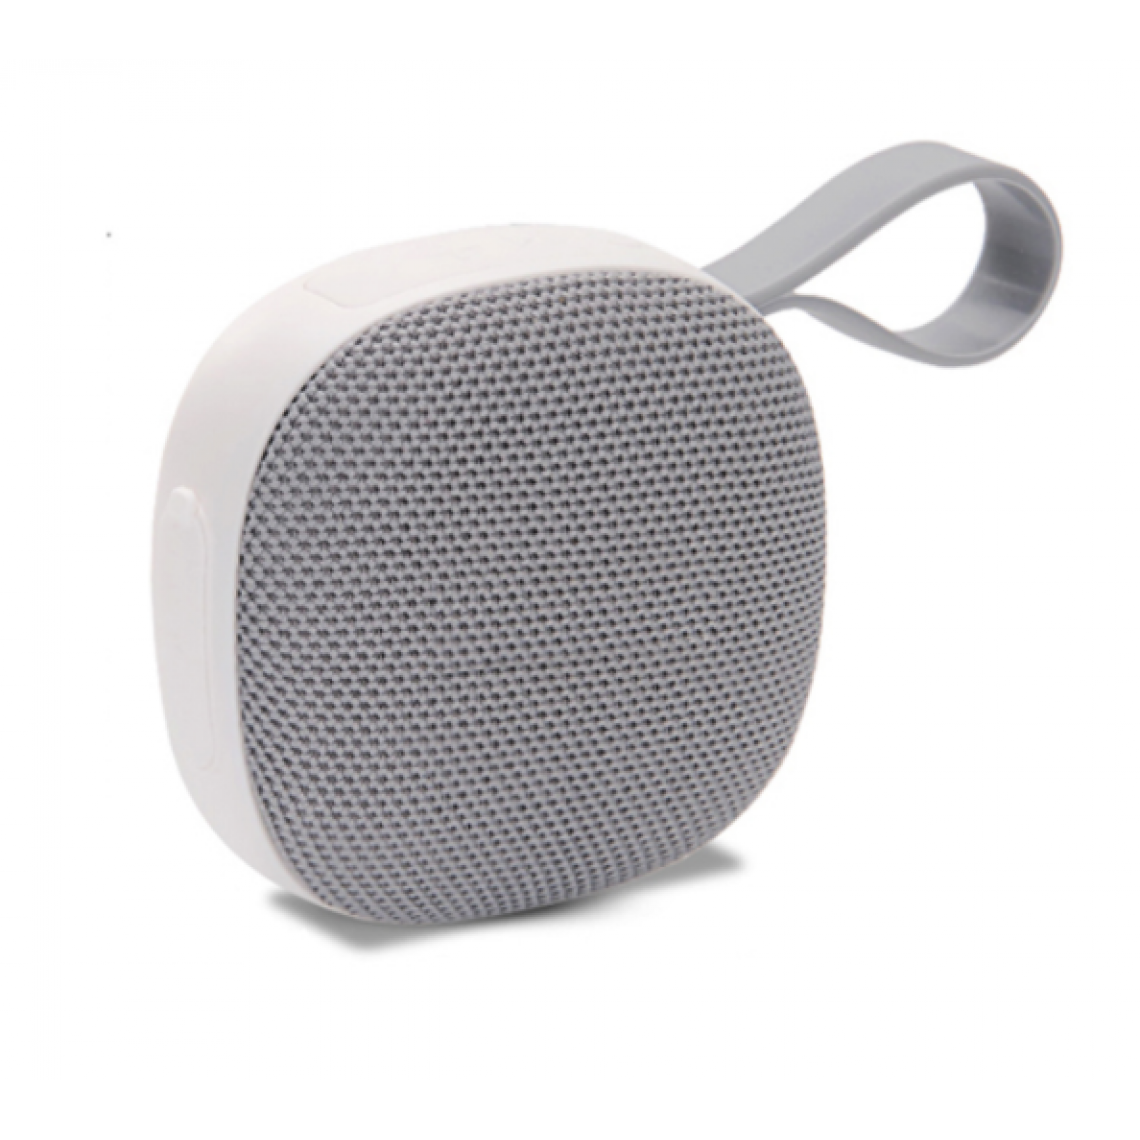 Universal - Haut-parleur Bluetooth 5.0 portable gris Haut-parleur de musique sans fil extérieur Subwoofer Sport Stéréo IPX6 Mini haut-parleurs(blanche) - Enceinte PC